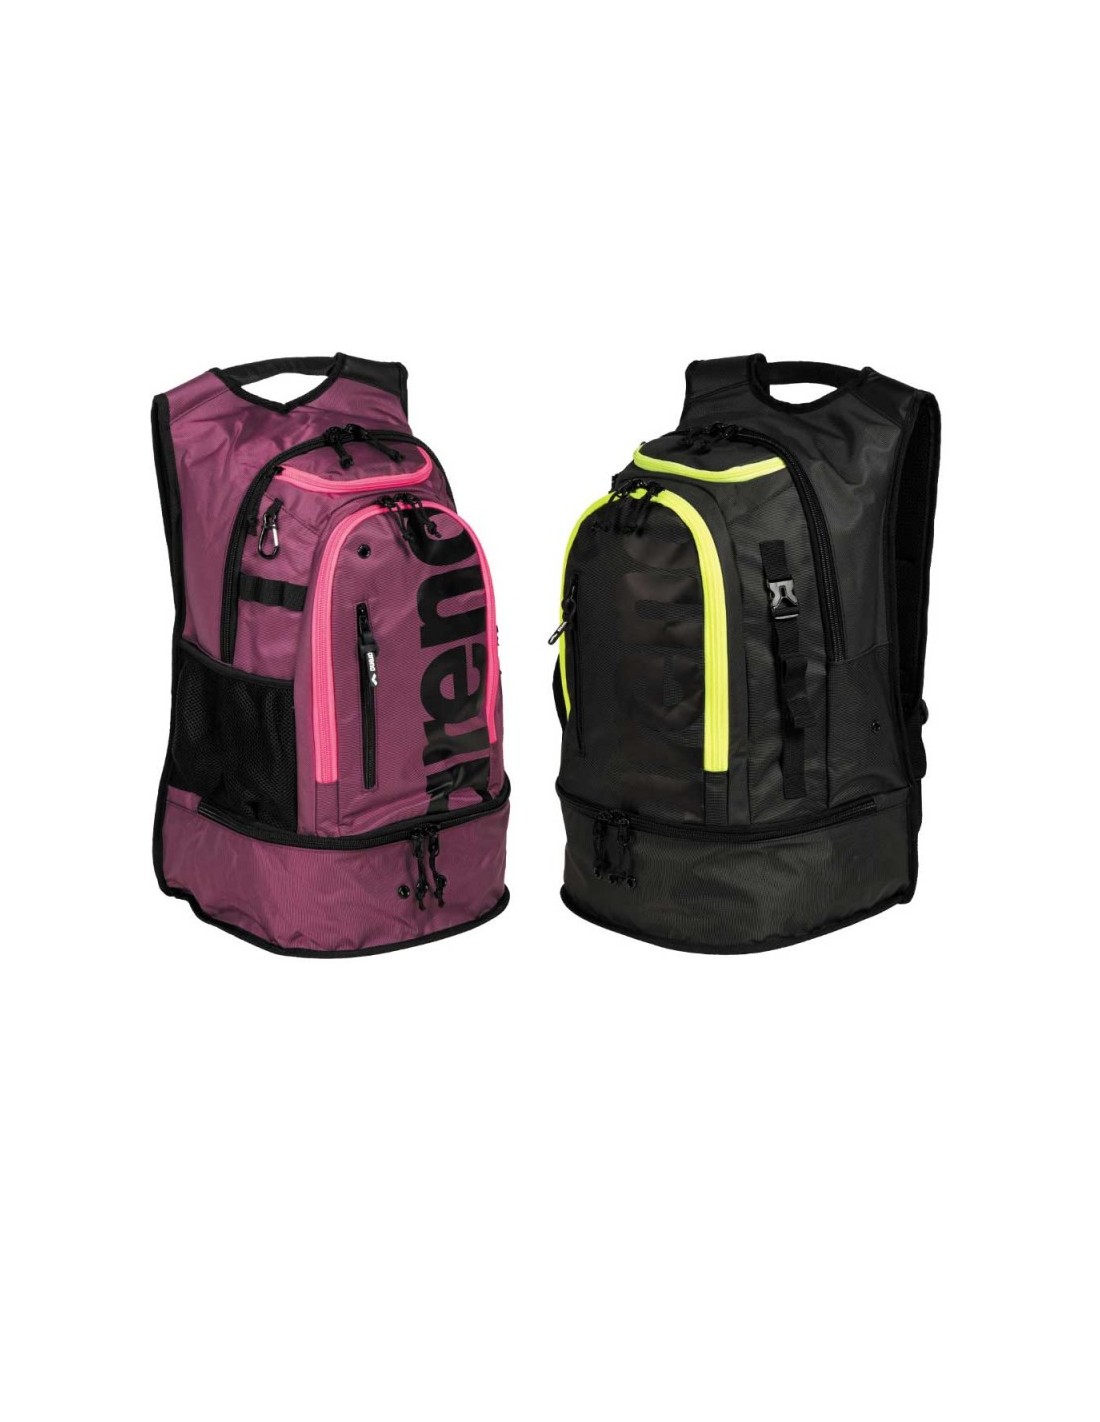 Fastpack 3.0 Backpack 40 L